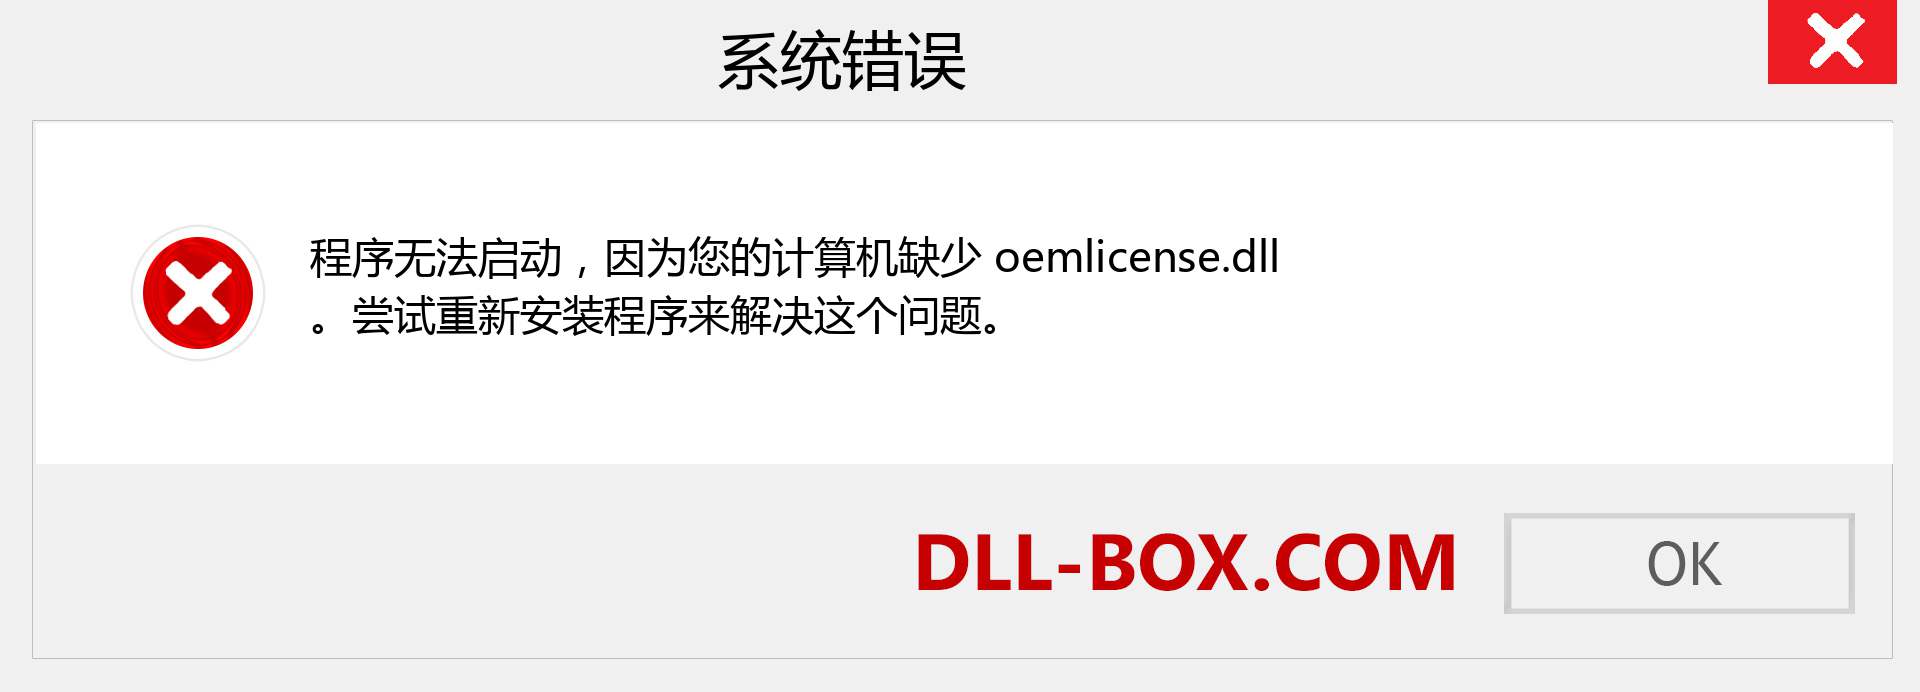 oemlicense.dll 文件丢失？。 适用于 Windows 7、8、10 的下载 - 修复 Windows、照片、图像上的 oemlicense dll 丢失错误